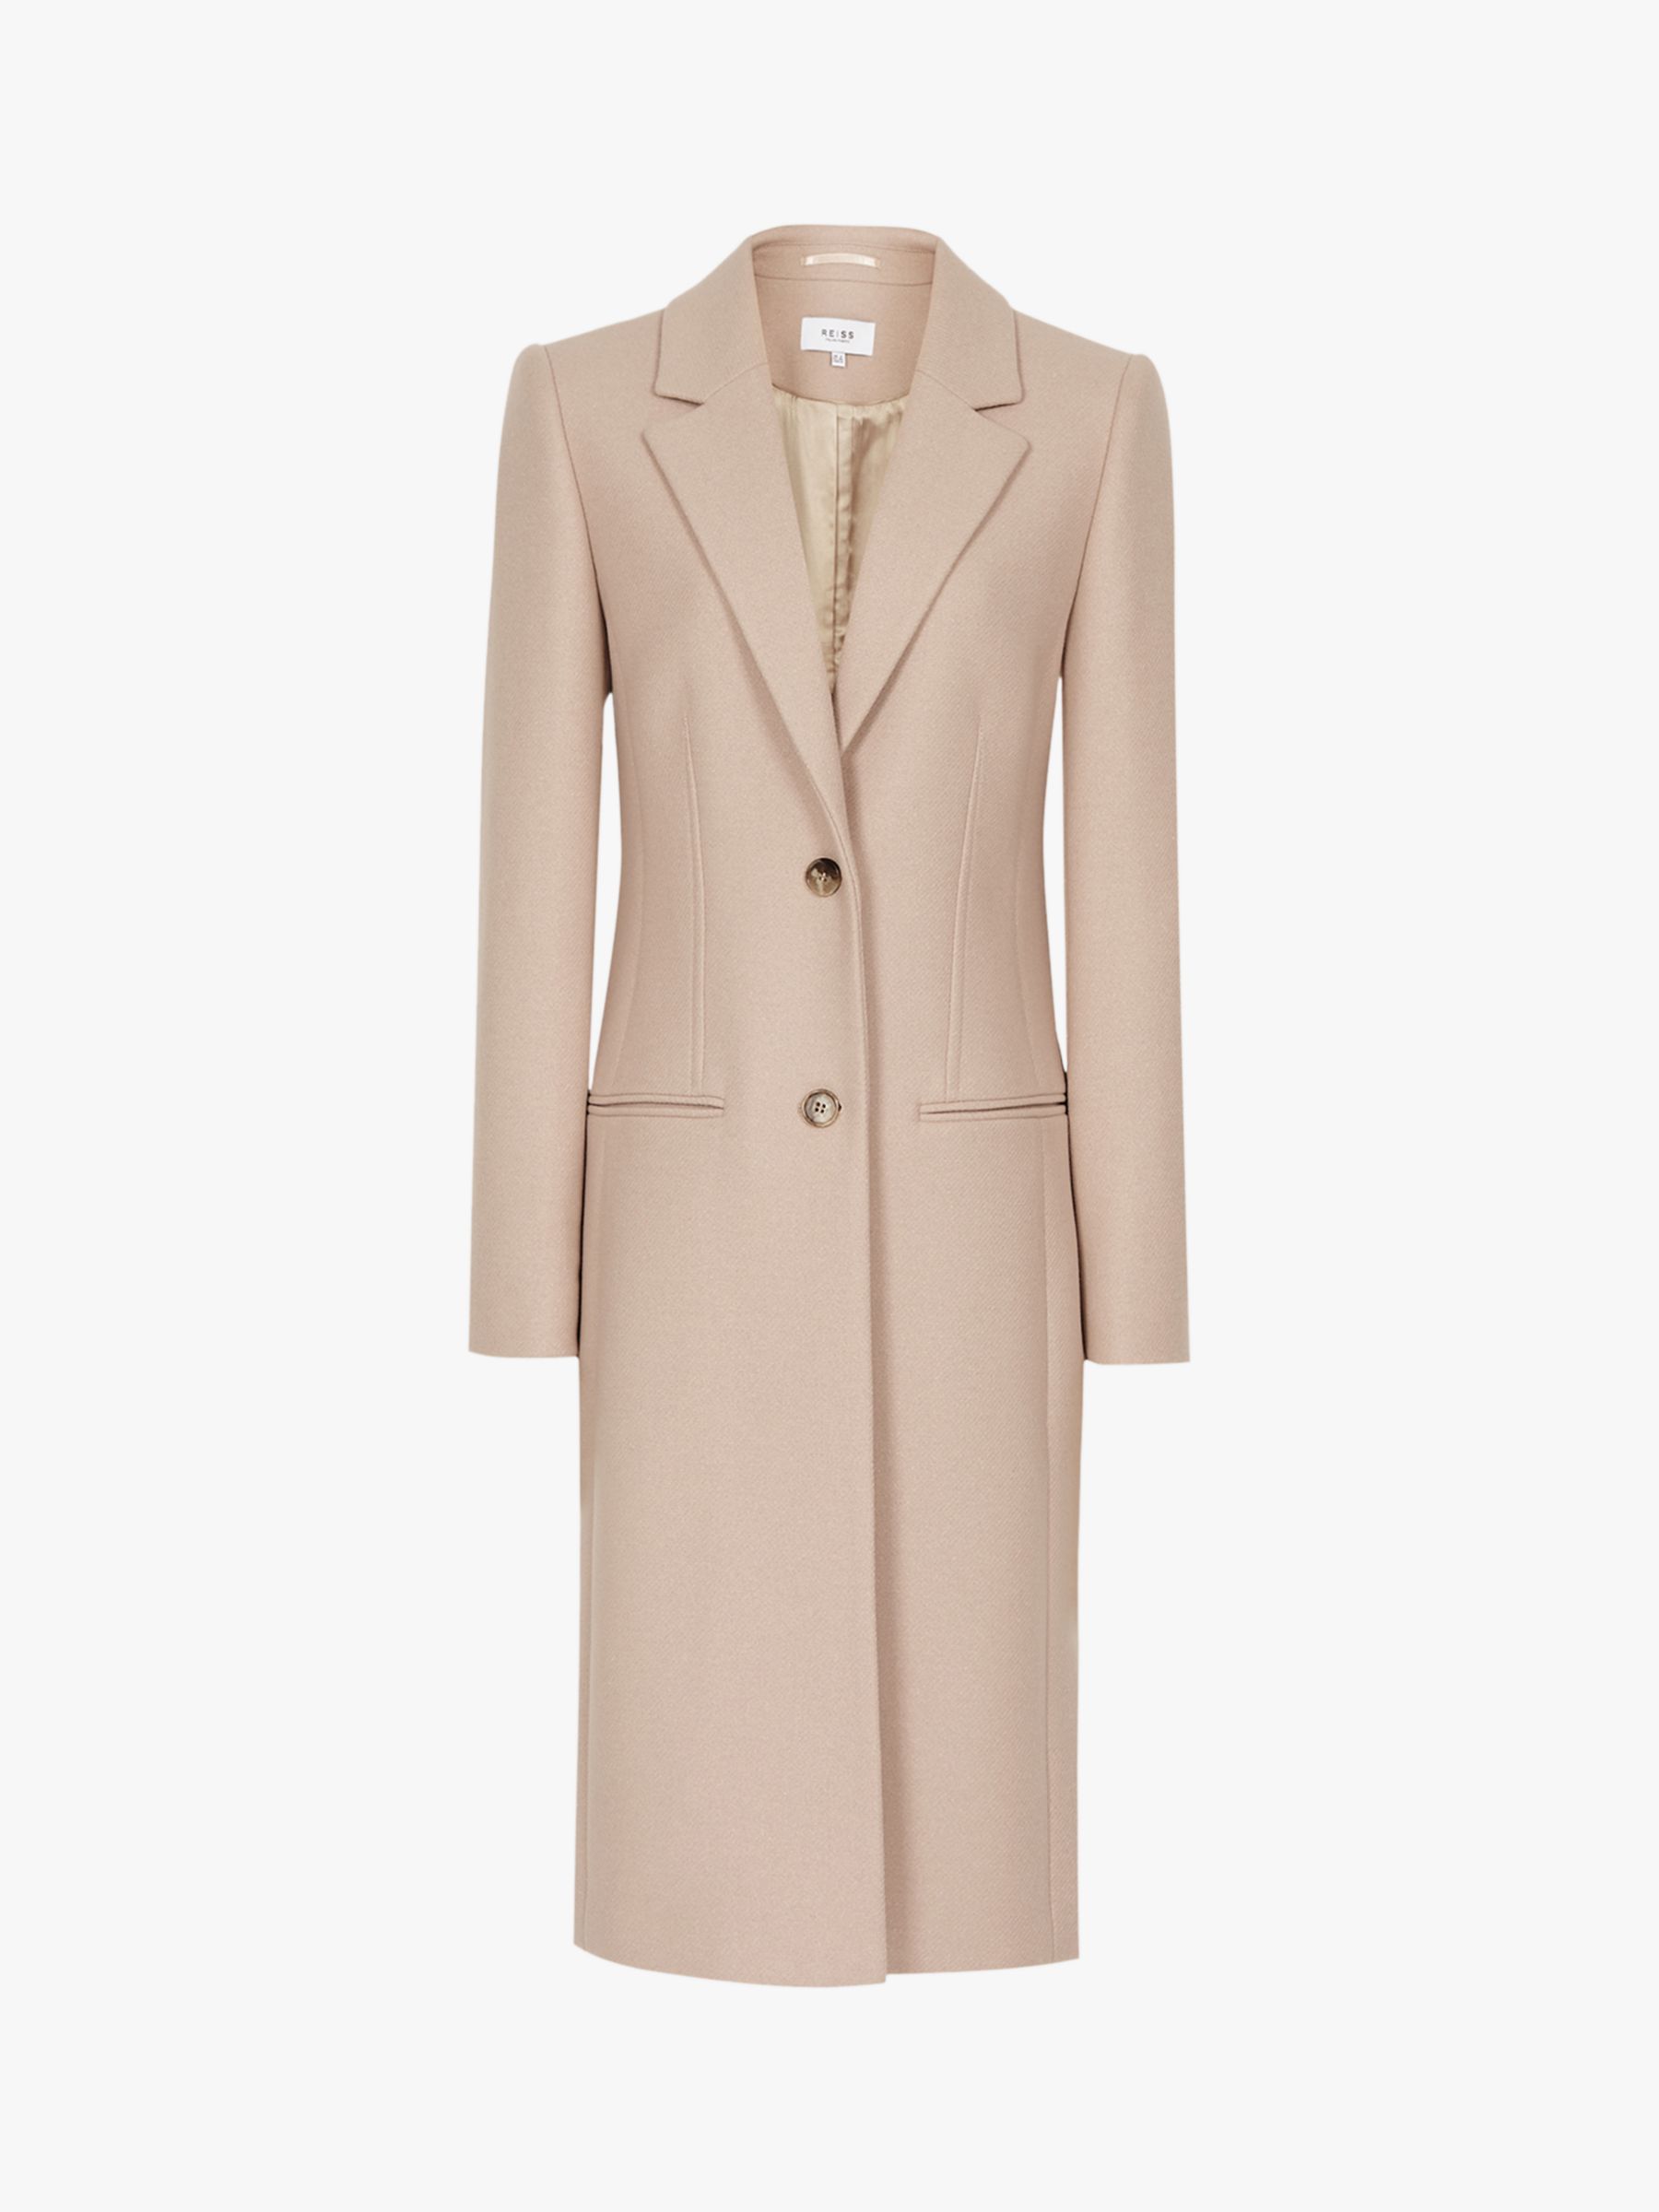 Reiss Pembury Wool Blend Coat, Pale Pink at John Lewis & Partners